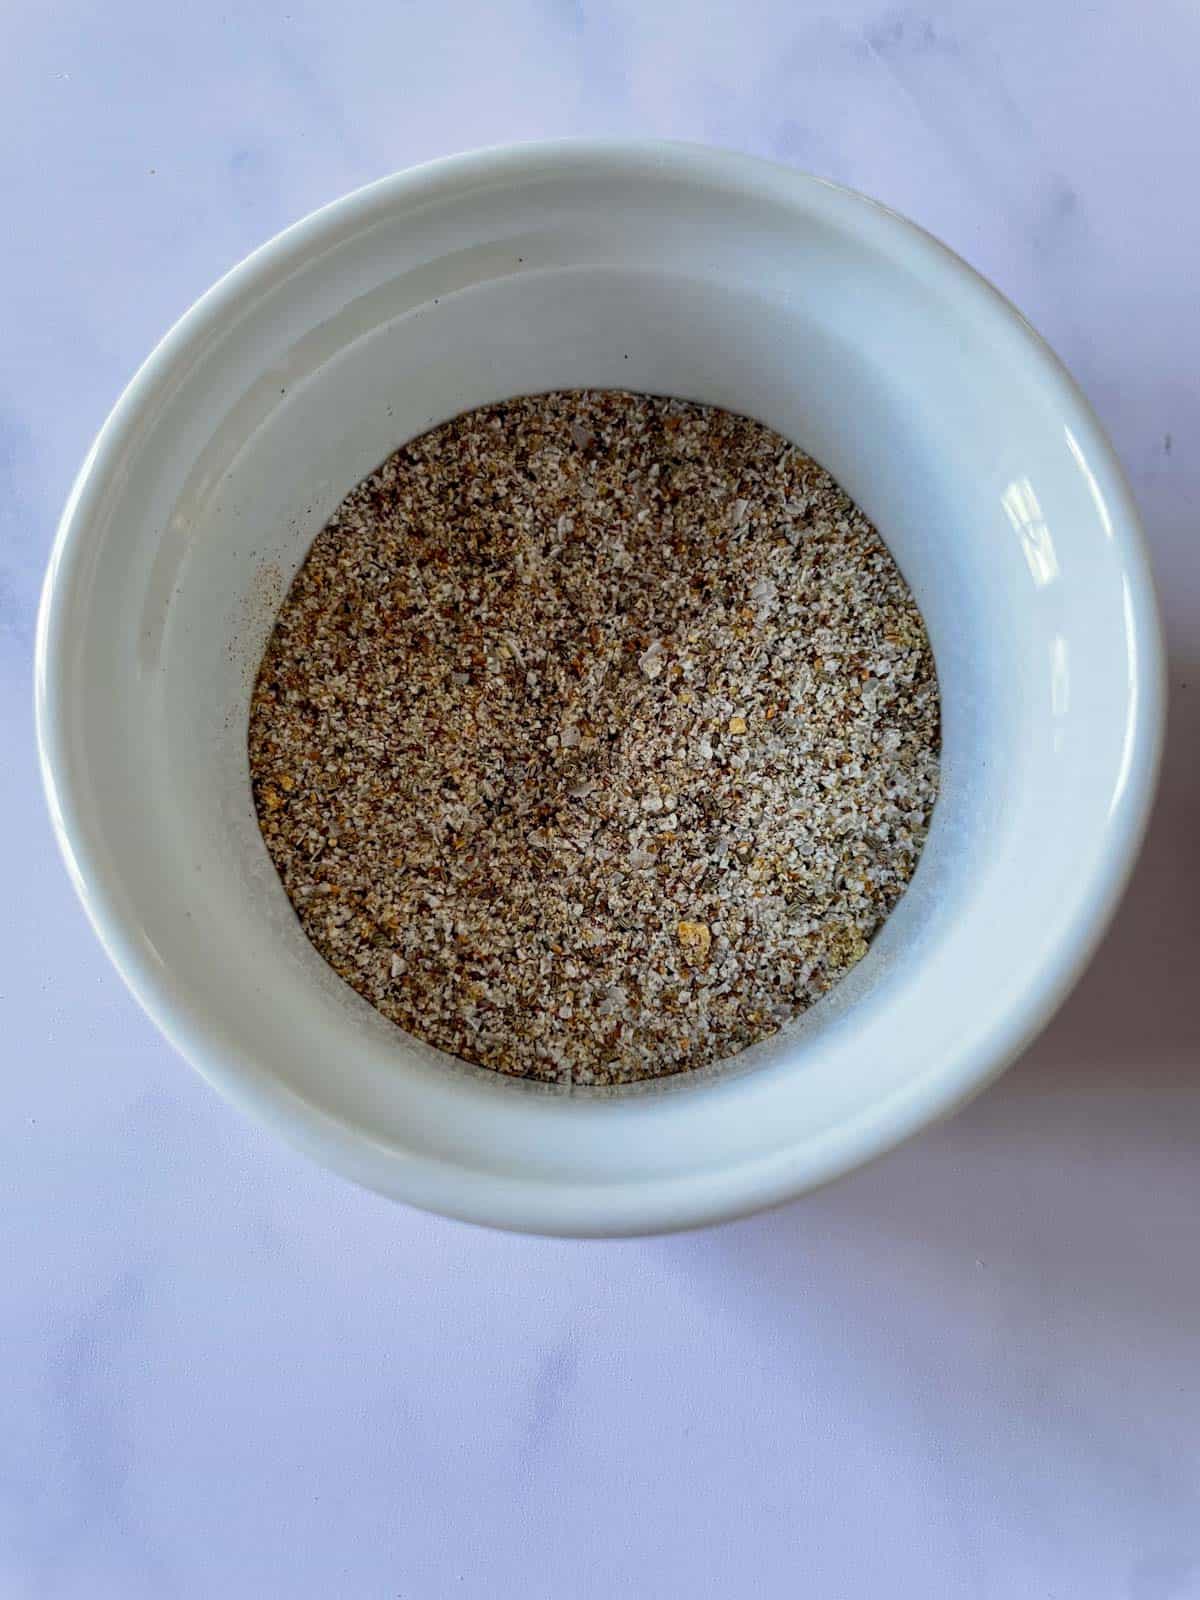 Spice rub for brisket in a small bowl.